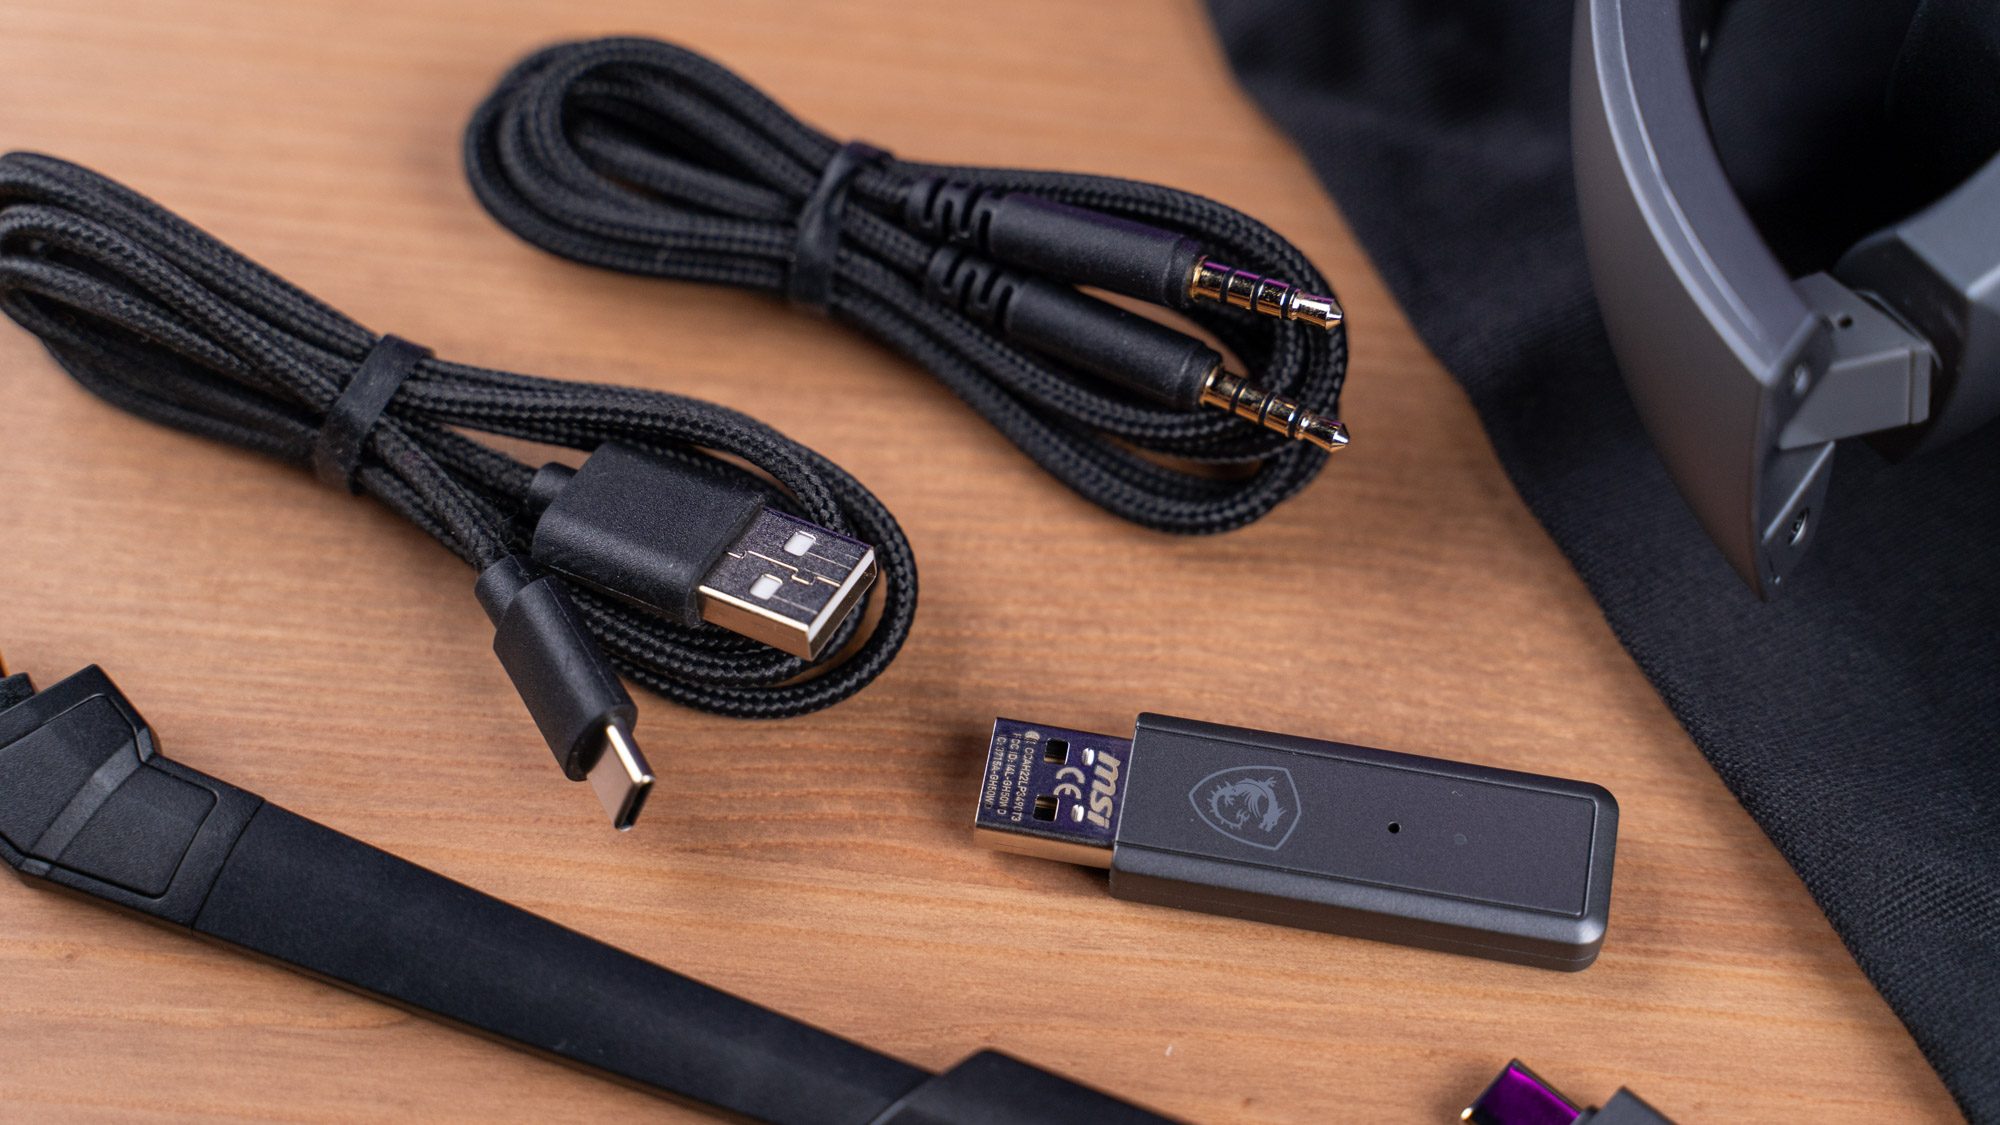 Kabel und USB-Dongle von MSI Immerse GH50 Wireless Gaming-Headset nah